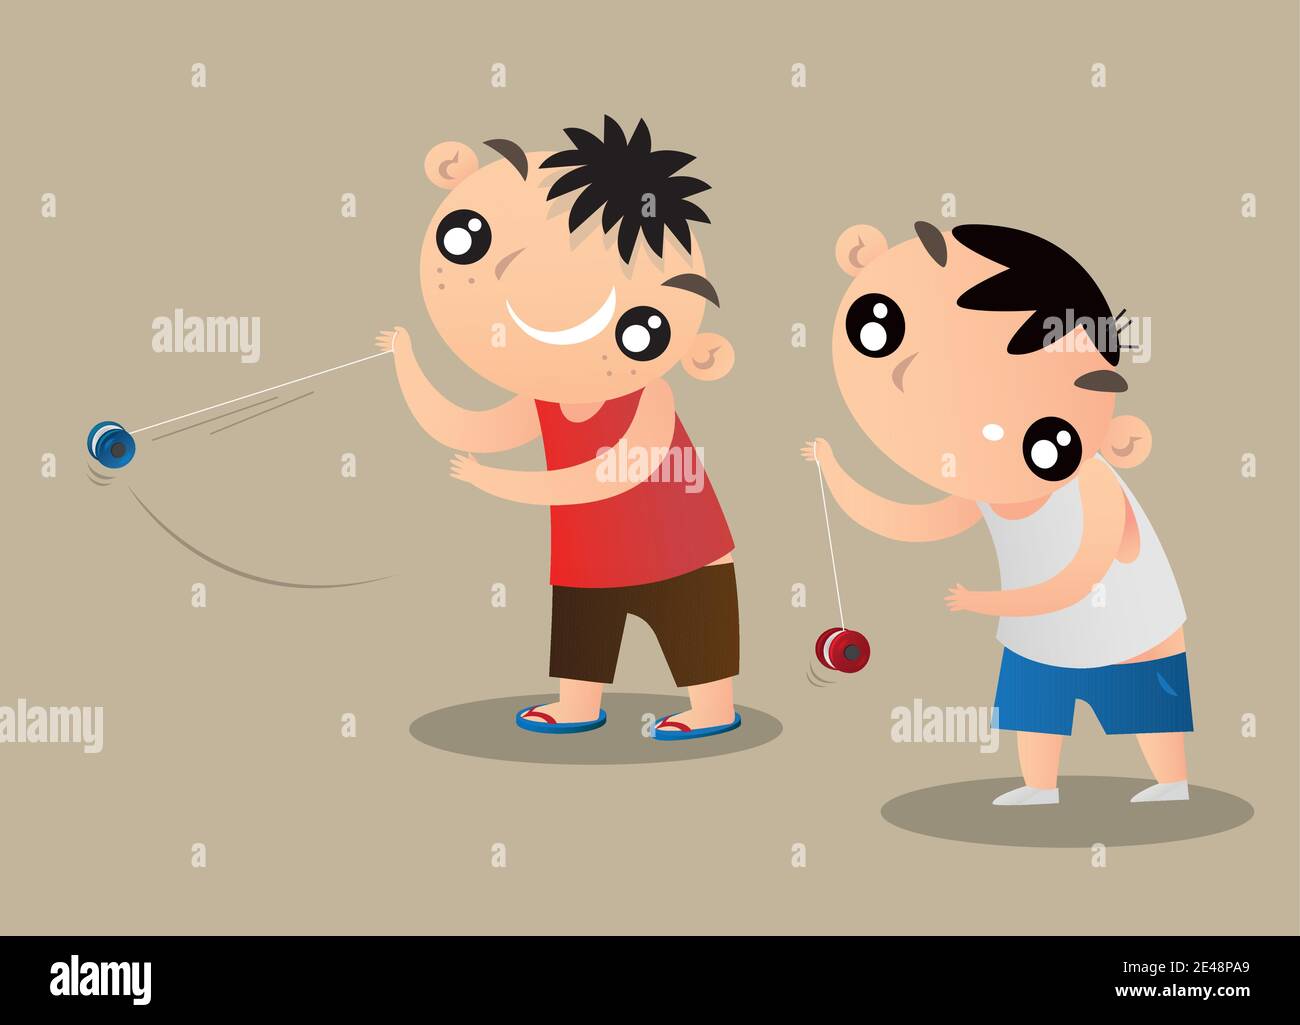 Illustrazione cartoon di due bambini di Hong Kong che giocano con